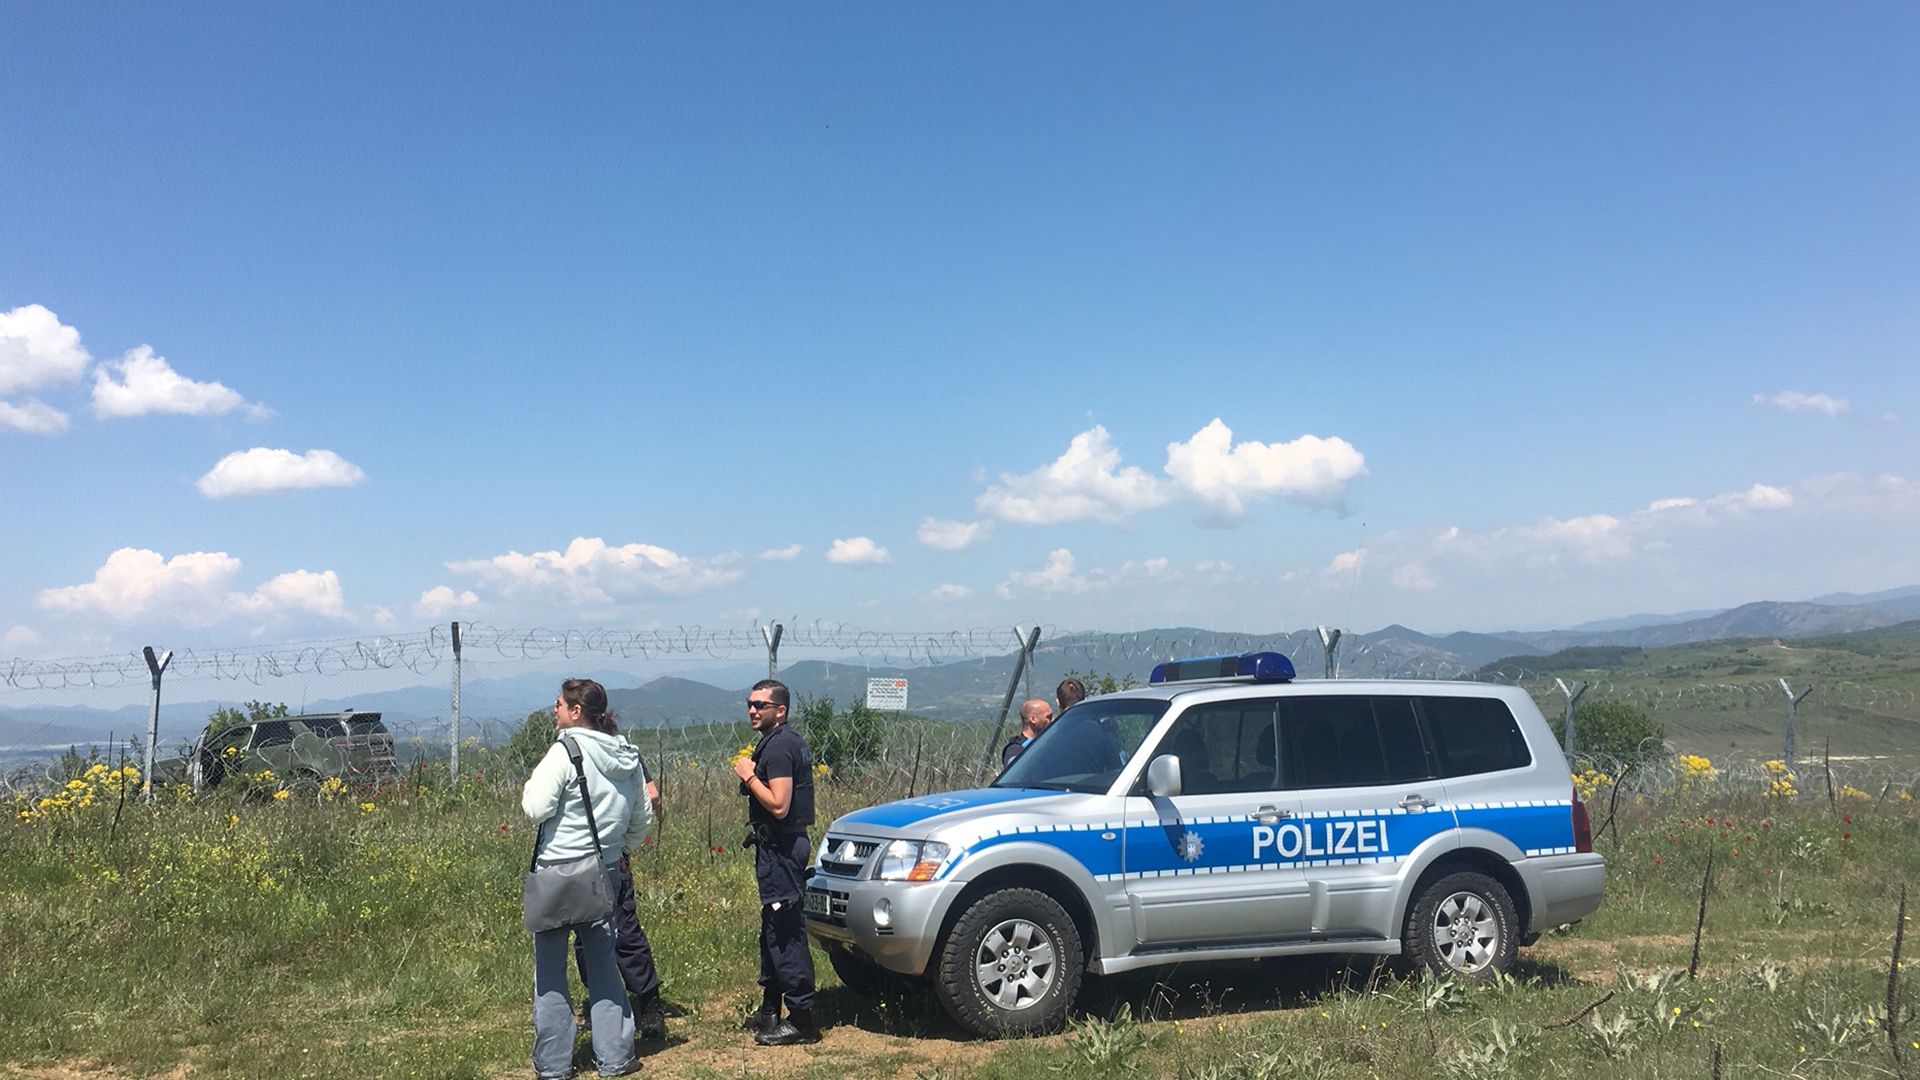 Deutsche Polizei im Einsatz an der Grenze Griechenland Mazedonien | Michael Lehmann / ARD